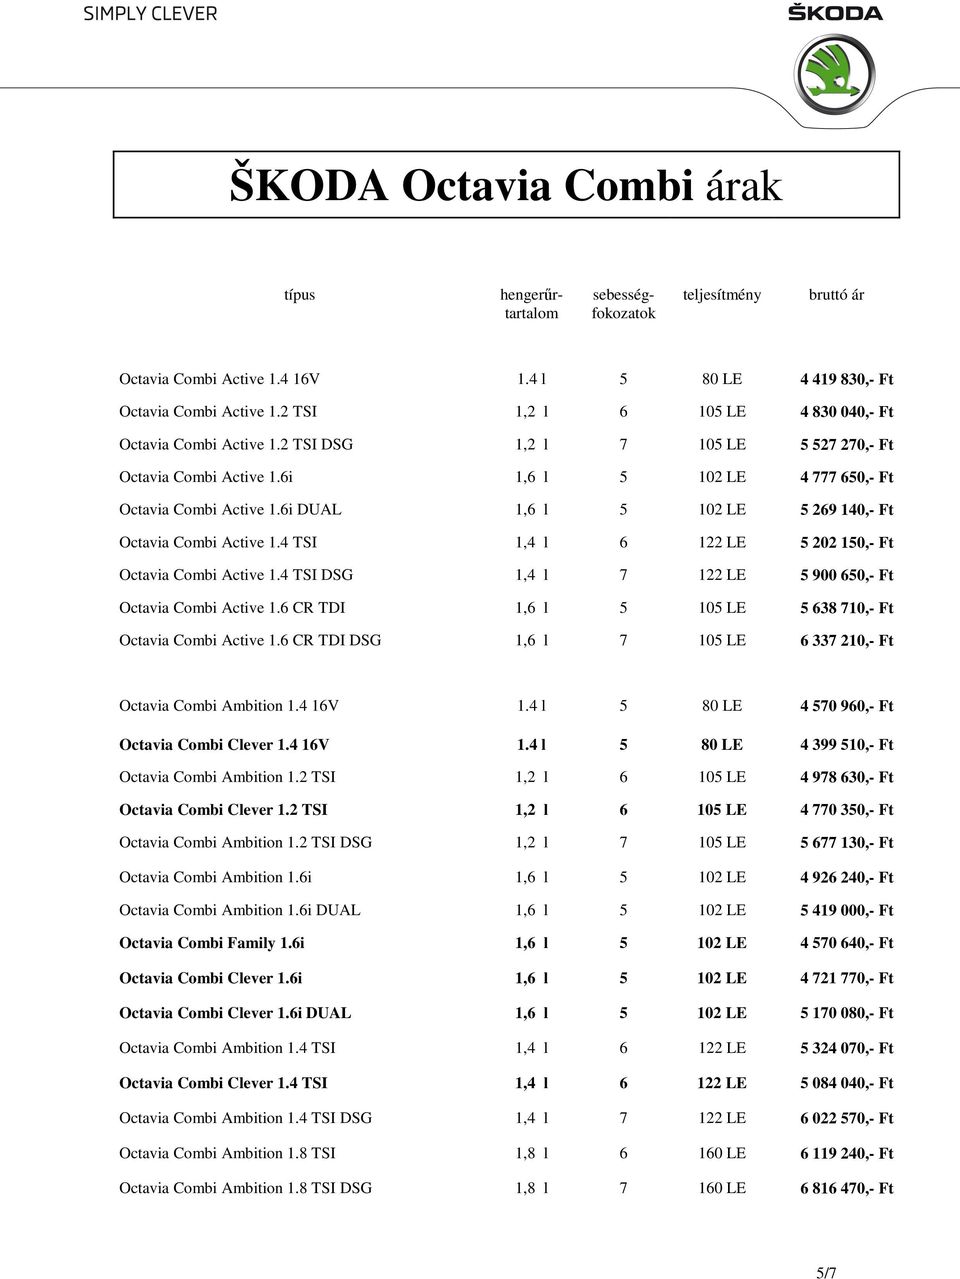 6i DUAL 1,6 l 5 102 LE 5 269 140,- Ft Octavia Combi Active 1.4 TSI 1,4 l 6 122 LE 5 202 150,- Ft Octavia Combi Active 1.4 TSI DSG 1,4 l 7 122 LE 5 900 650,- Ft Octavia Combi Active 1.